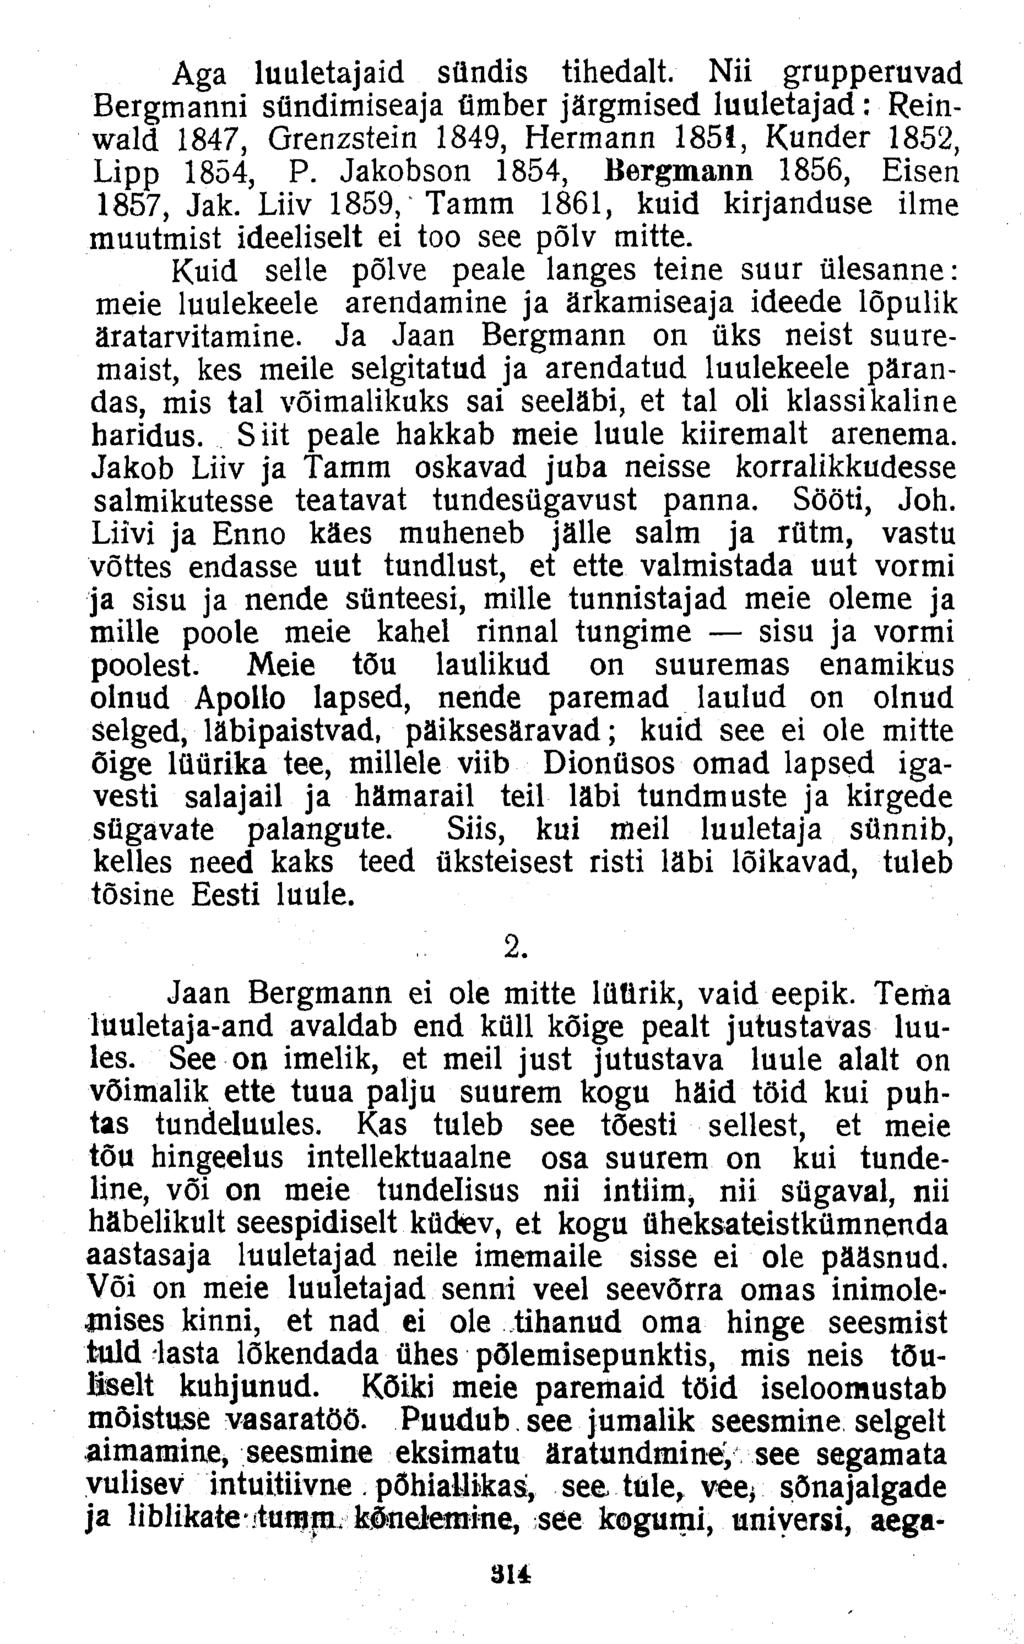 Aga luuletajaid sündis tihedalt. Nii grupperuvad Bergmanni sündimiseaja ümber järgmised luuletajad: Reinwald 1847, Grenzstein 1849, Hermann 185!, Kunder 1852, Lipp 1854, P.